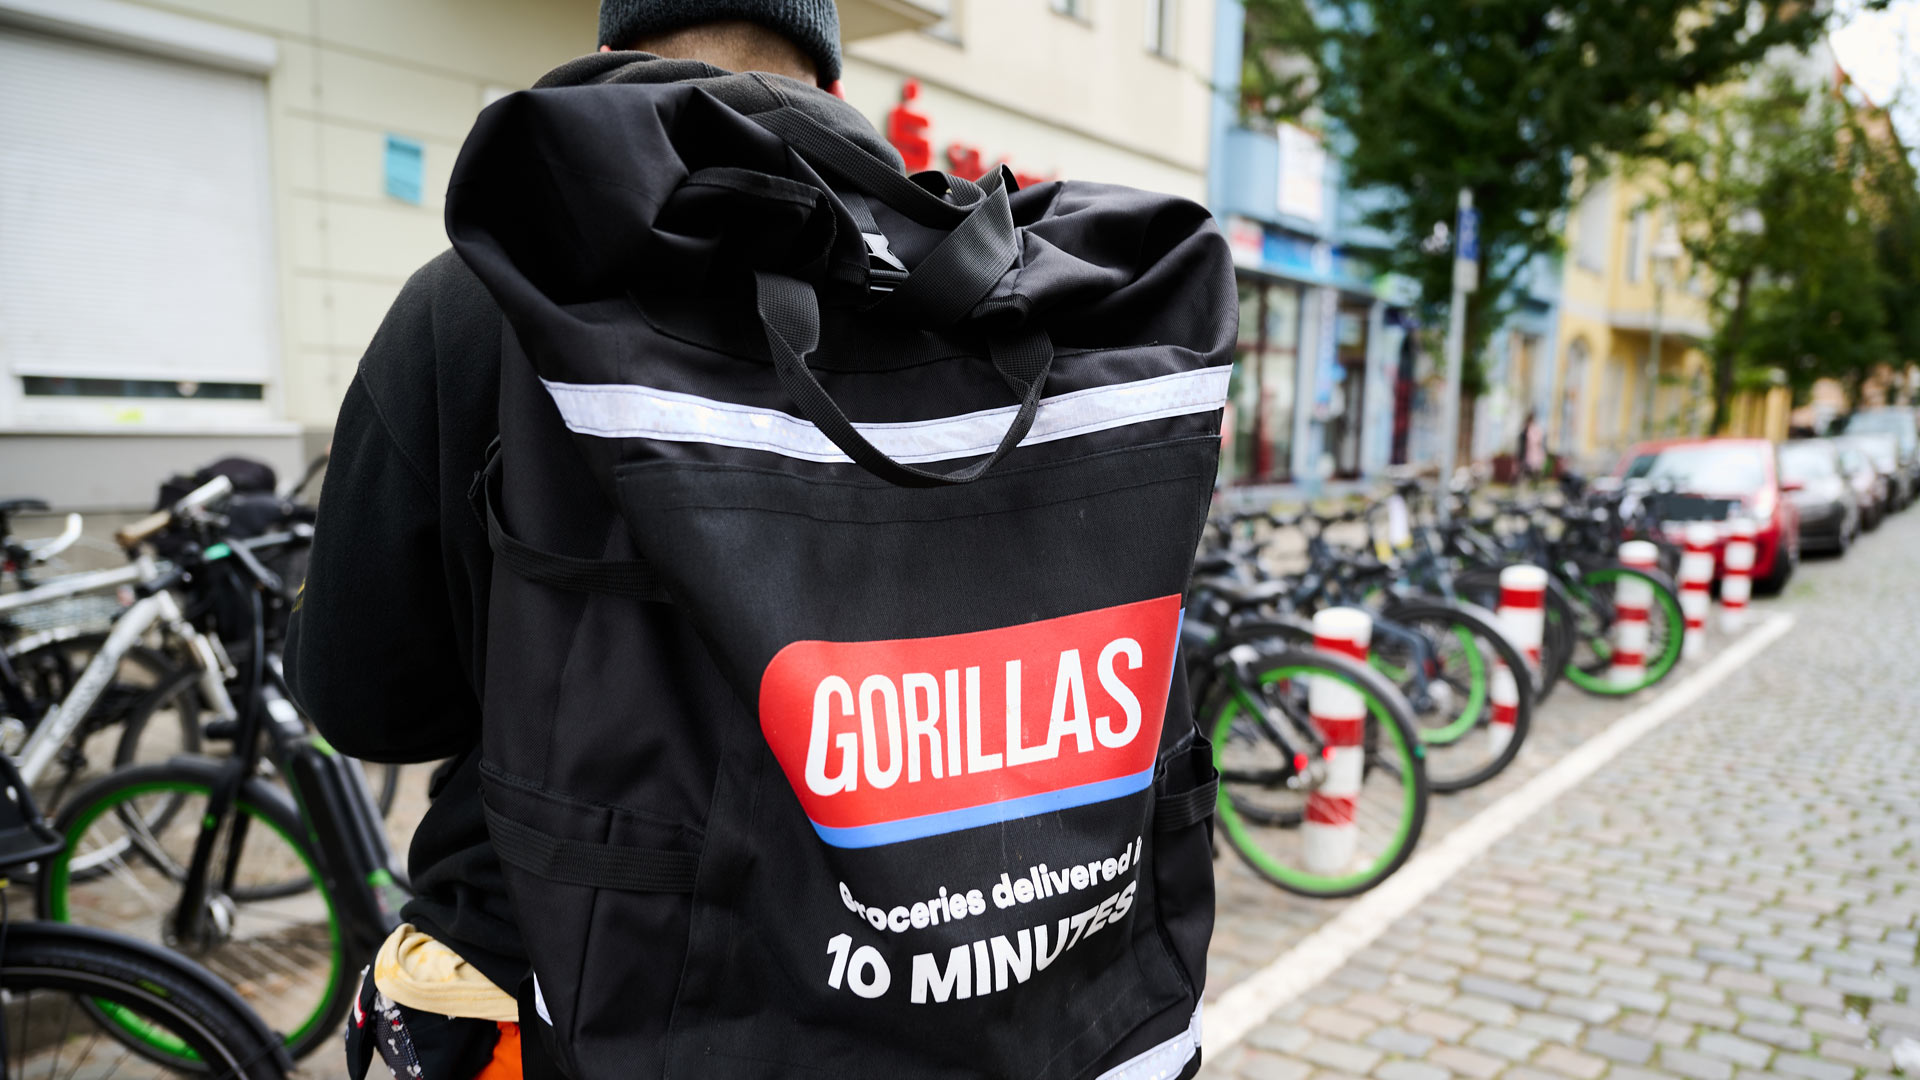 Ein Beschäftigter des Lieferdienstes Gorillas trägt einen Rucksack und steht vor den Fahrrädern | picture alliance/dpa